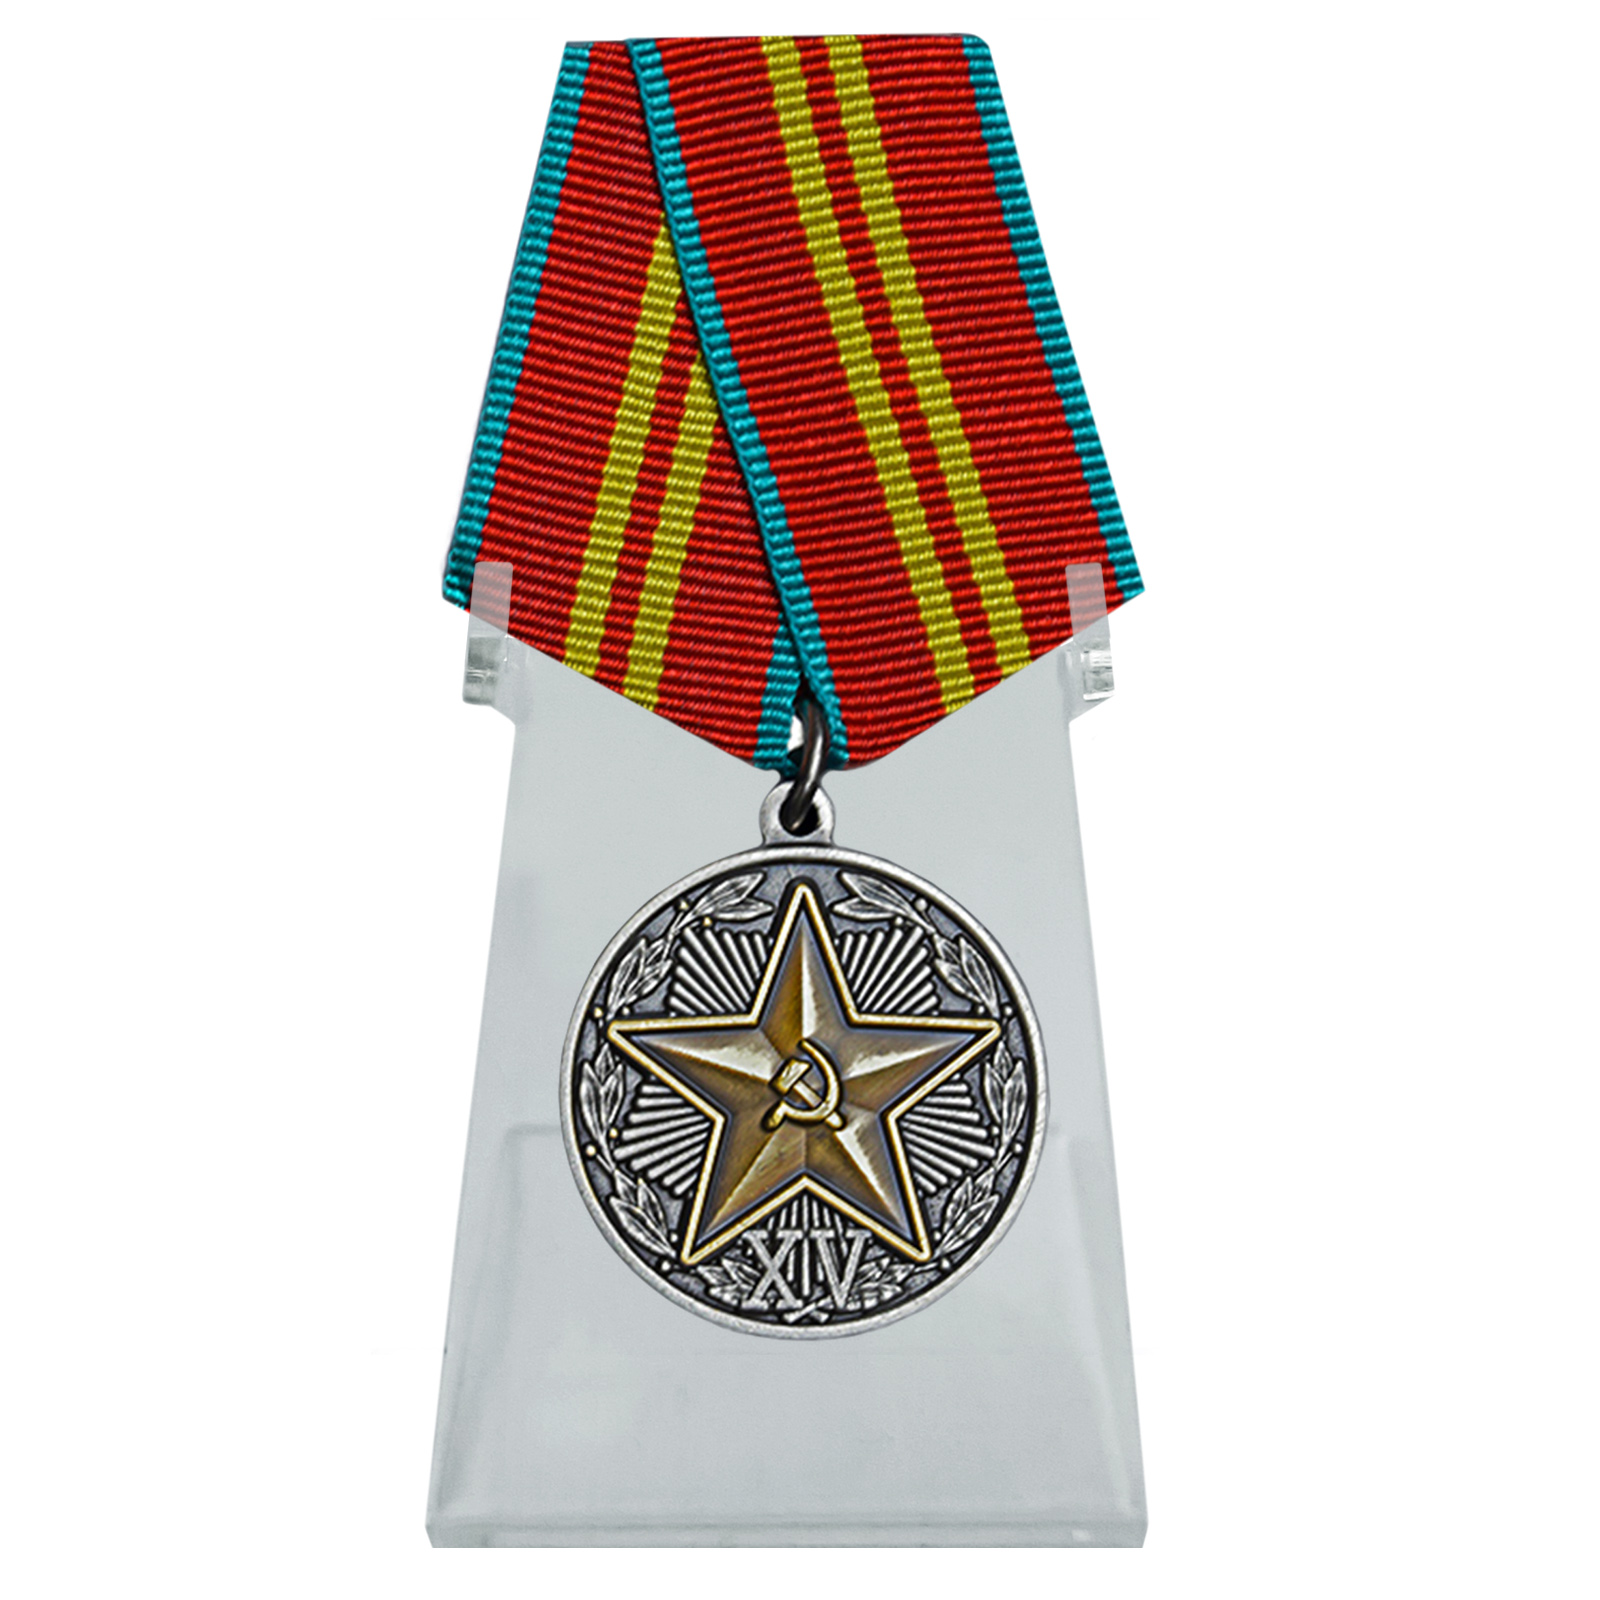 Медаль "За безупречную службу" в КГБ СССР на подставке